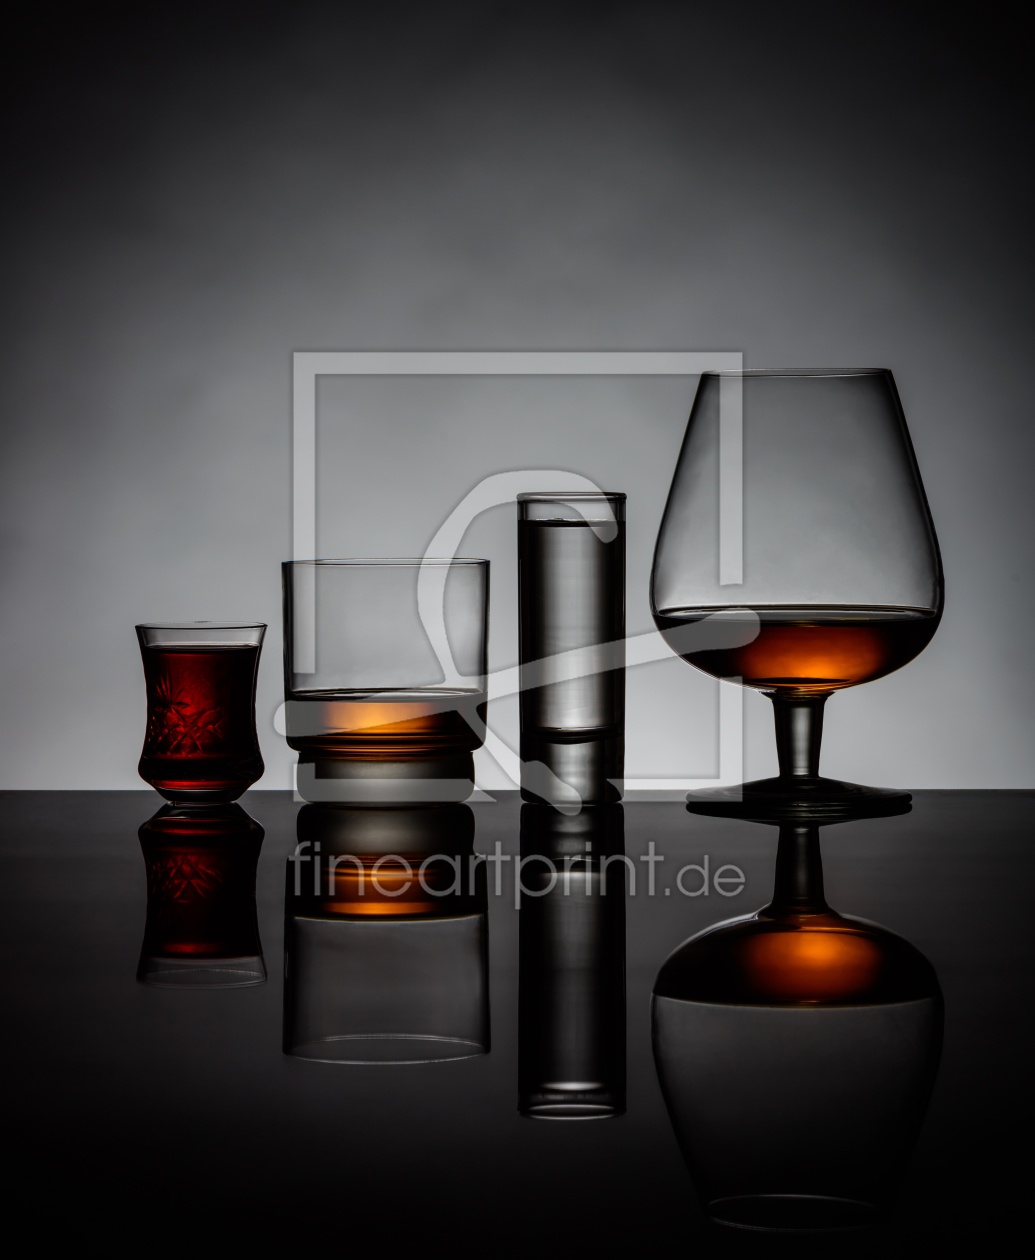 Bild-Nr.: 11916998 Hochprozentige Getränke in Gläser erstellt von xfotostudio